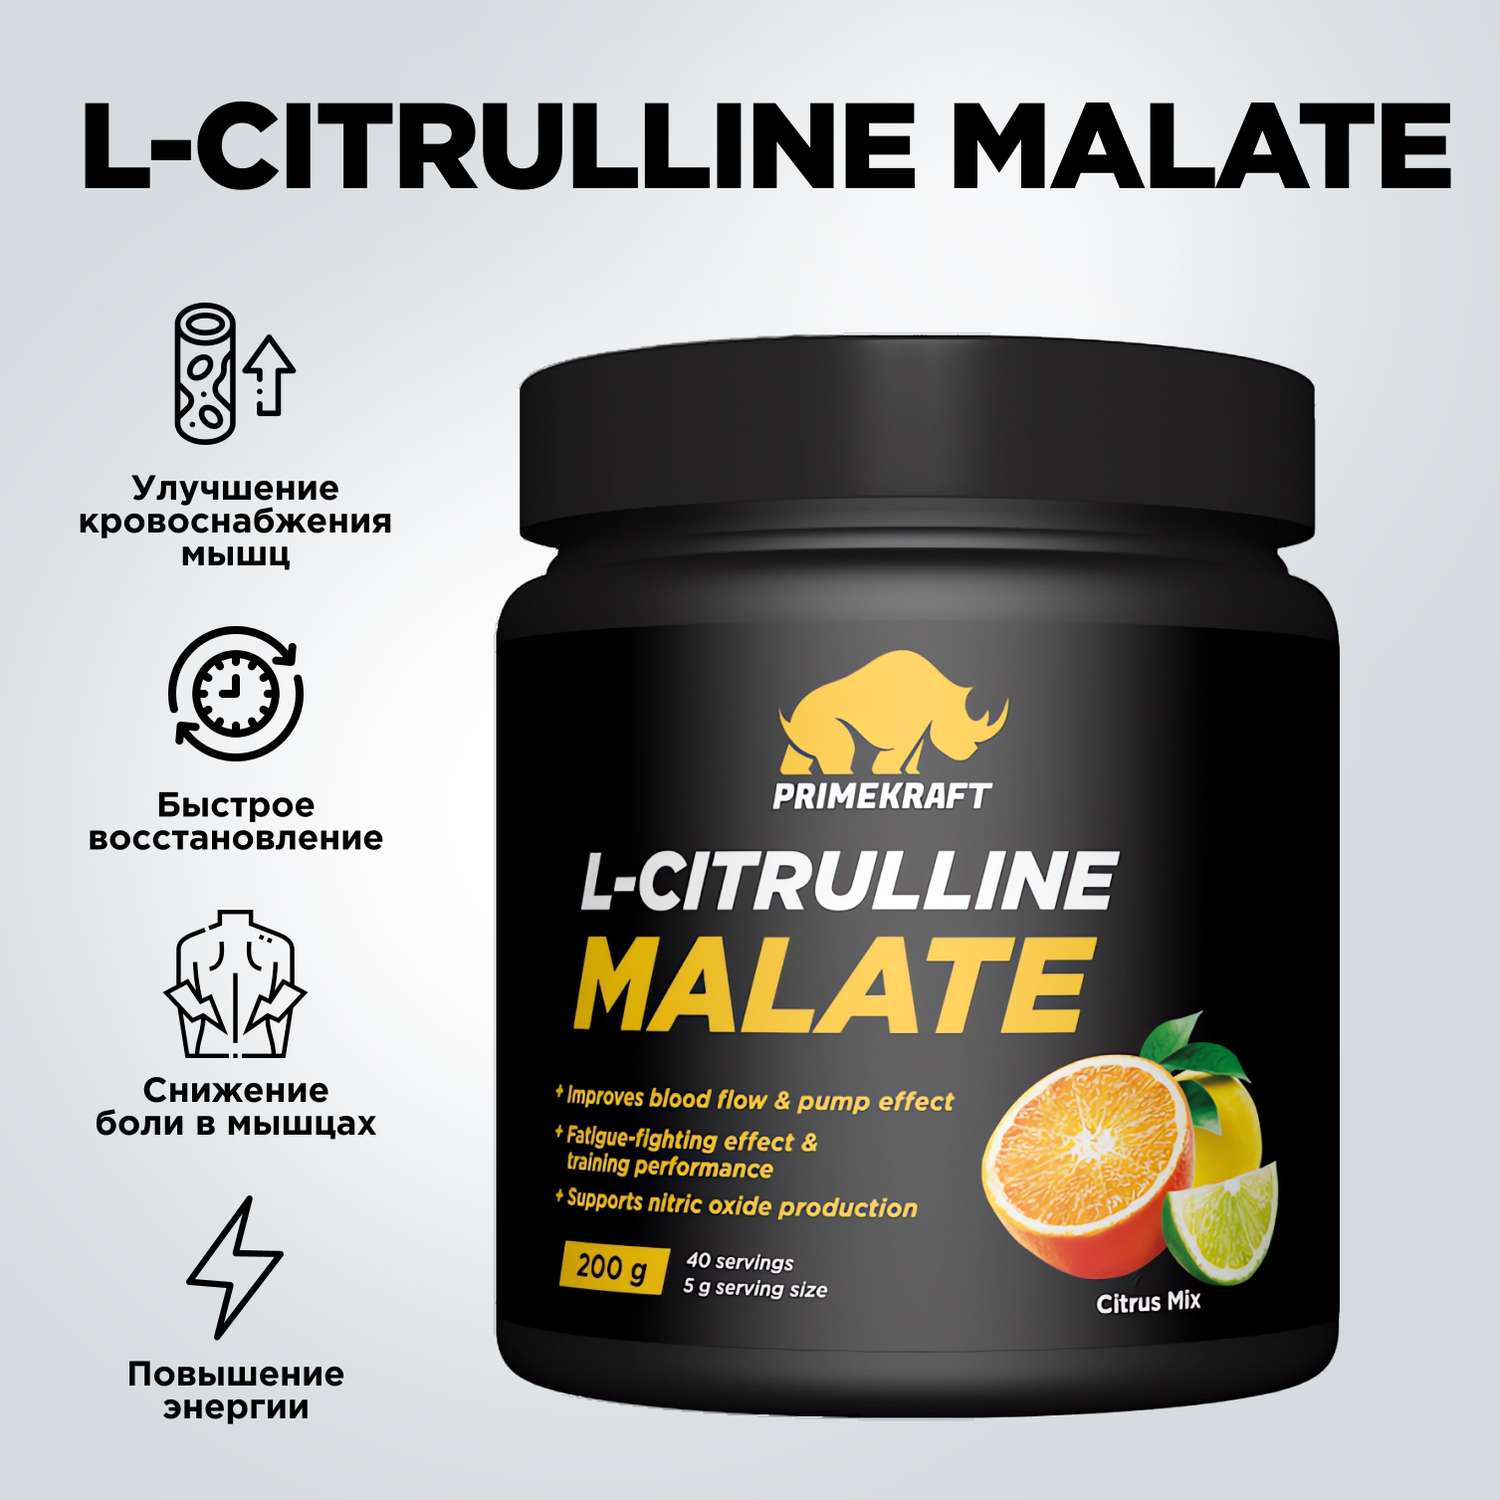 Цитруллин малат Prime Kraft L-Citrulline Malate цитрусовый микс 200 г - фото 2